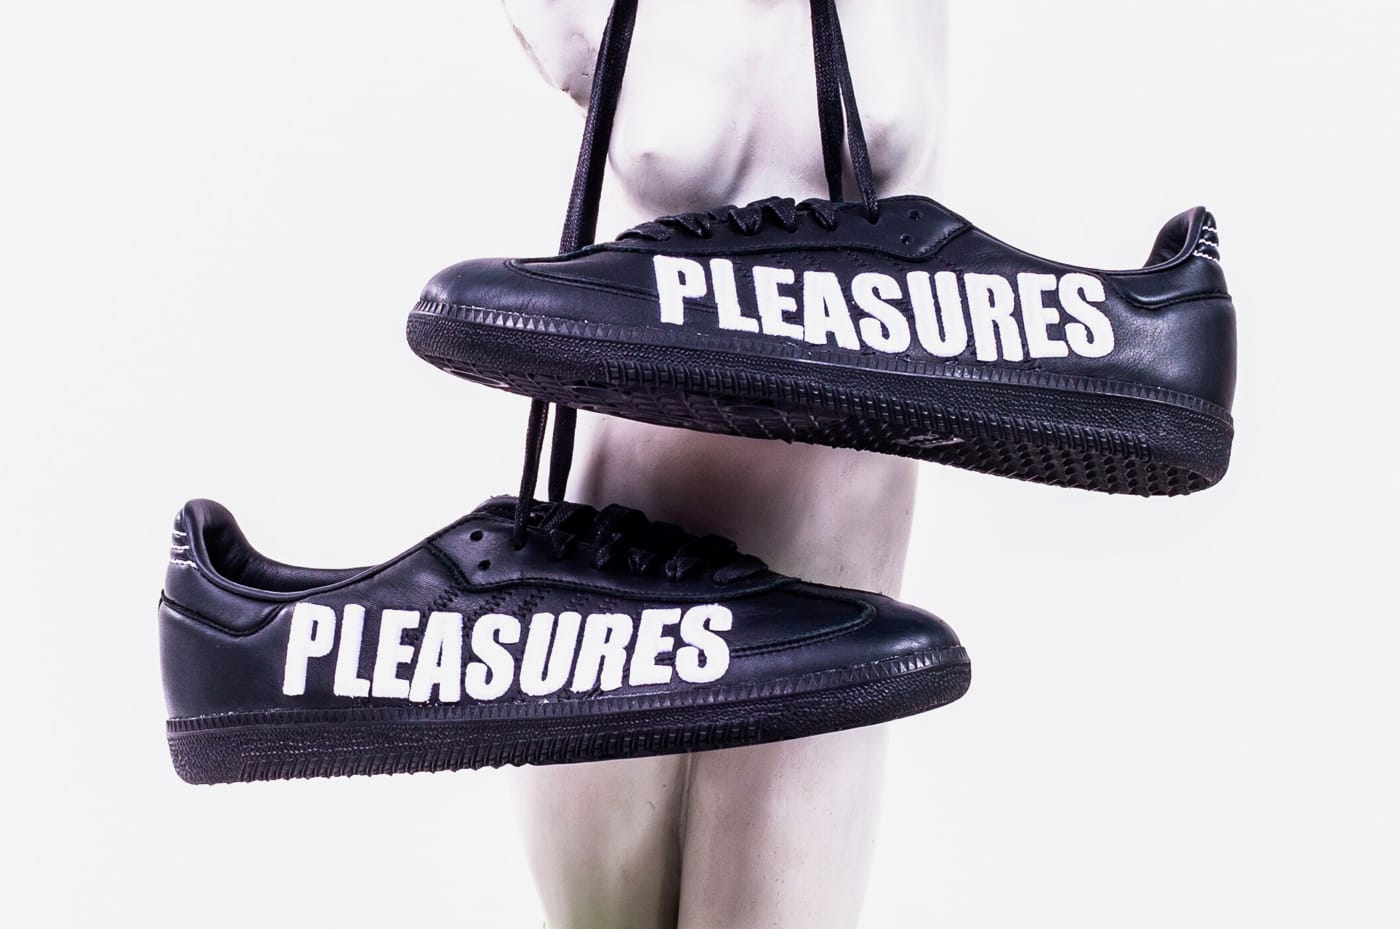 PLEASURES x adidas Consortium Release 